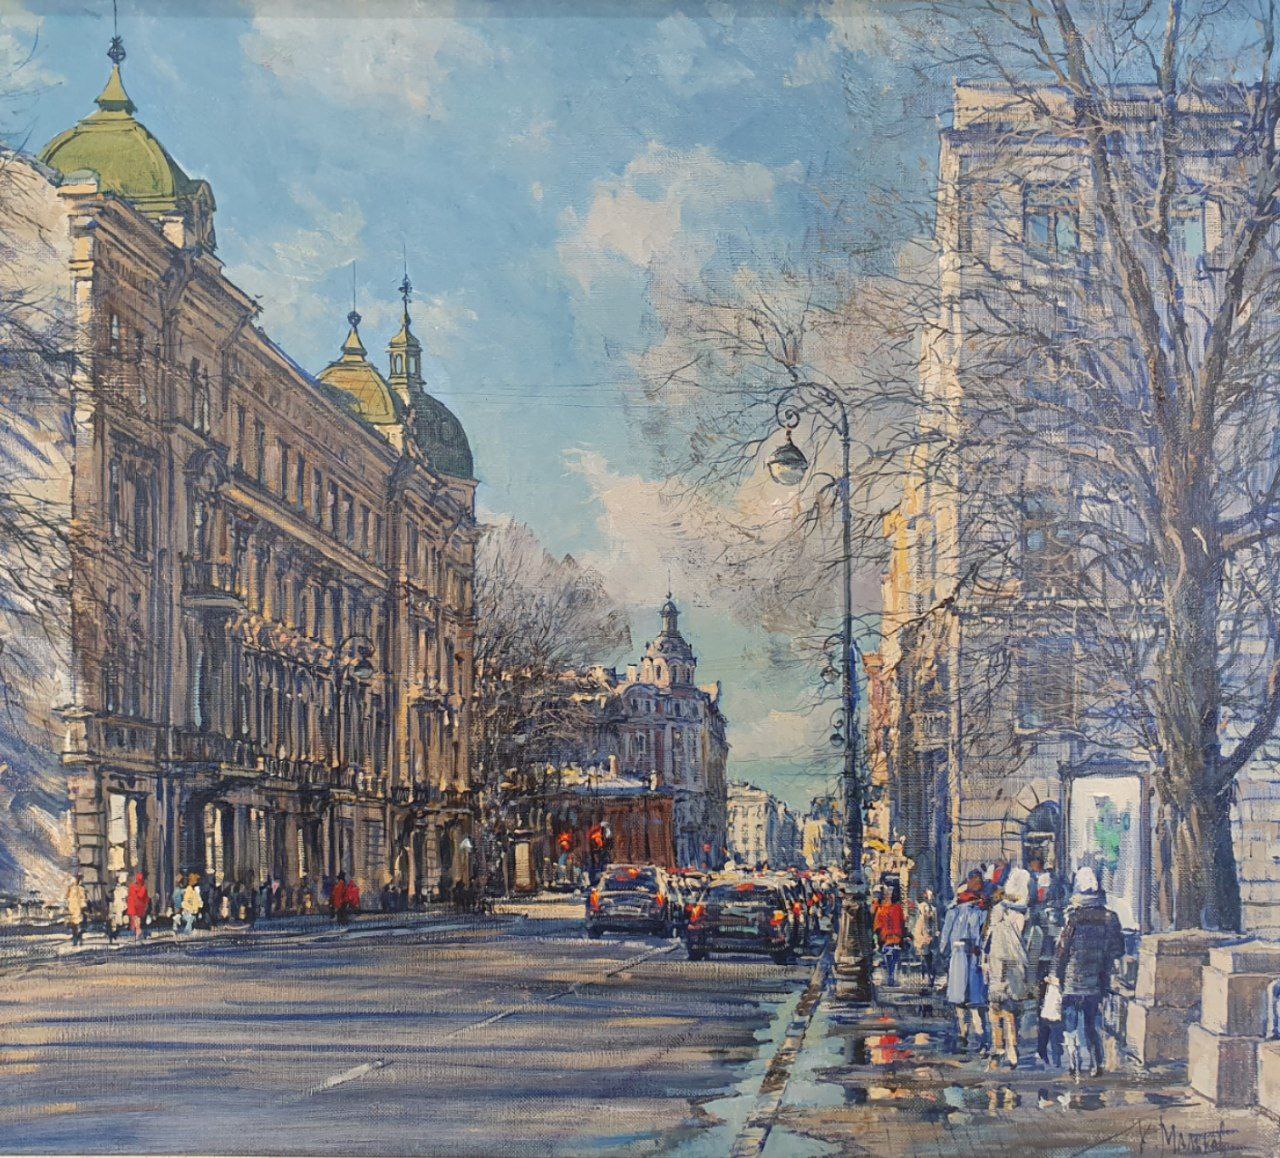 Kamennoostrovsky Prospekt - 1, Kirill Malkov, Buy the painting Oil